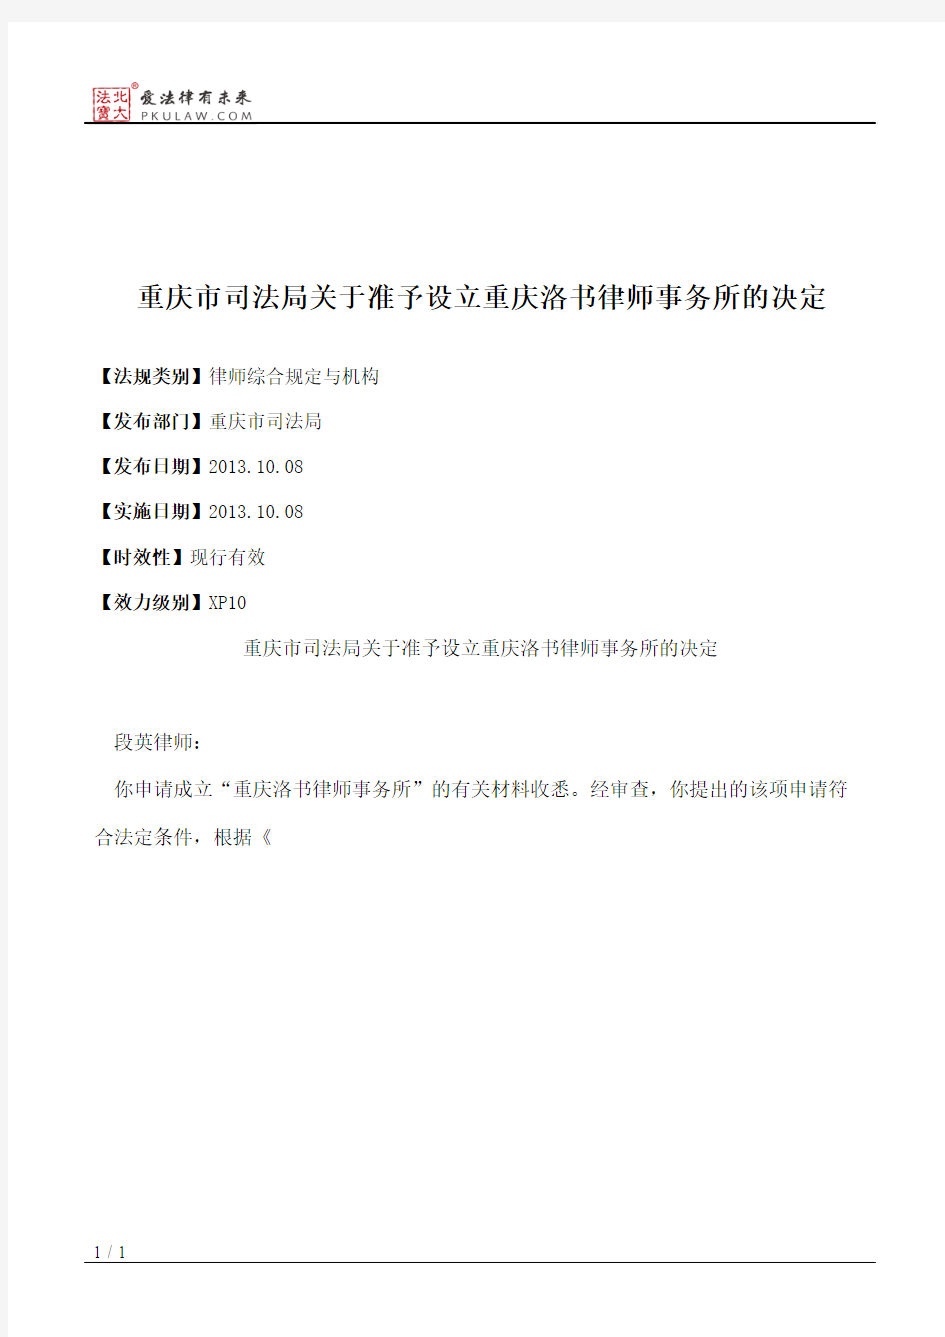 重庆市司法局关于准予设立重庆洛书律师事务所的决定